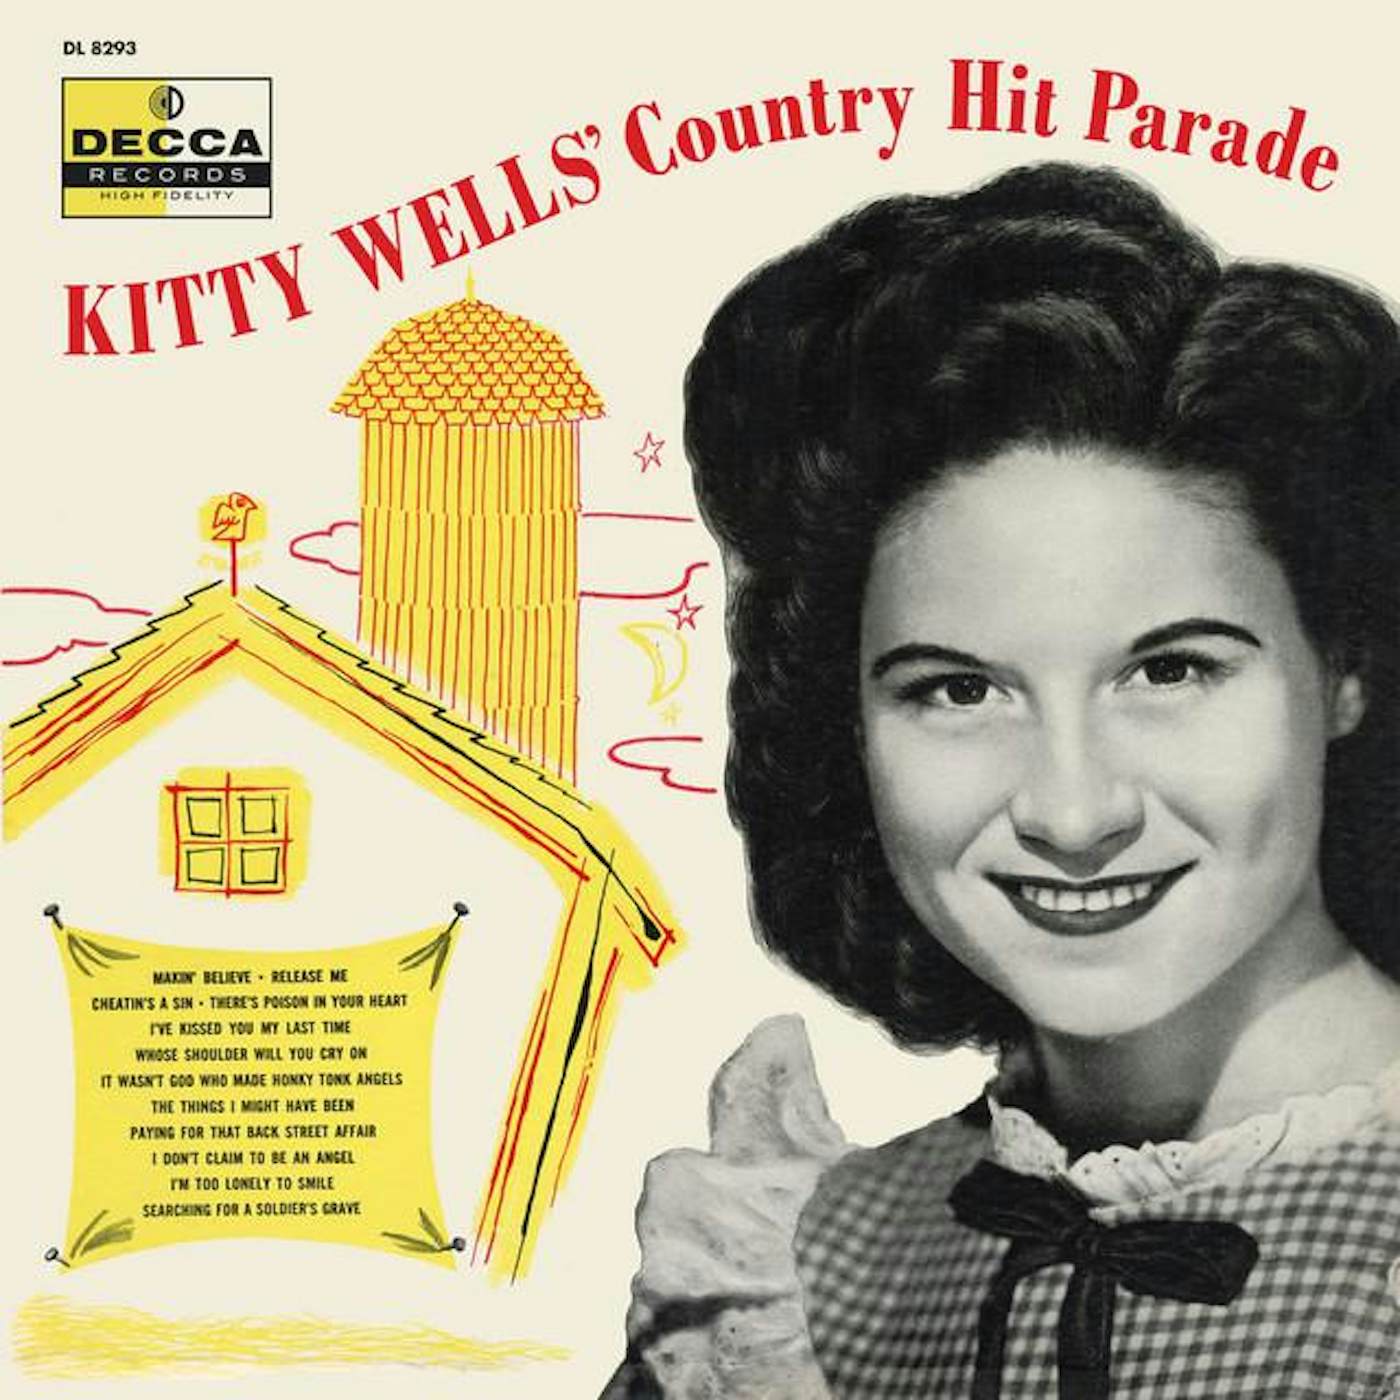 Kitty Wells